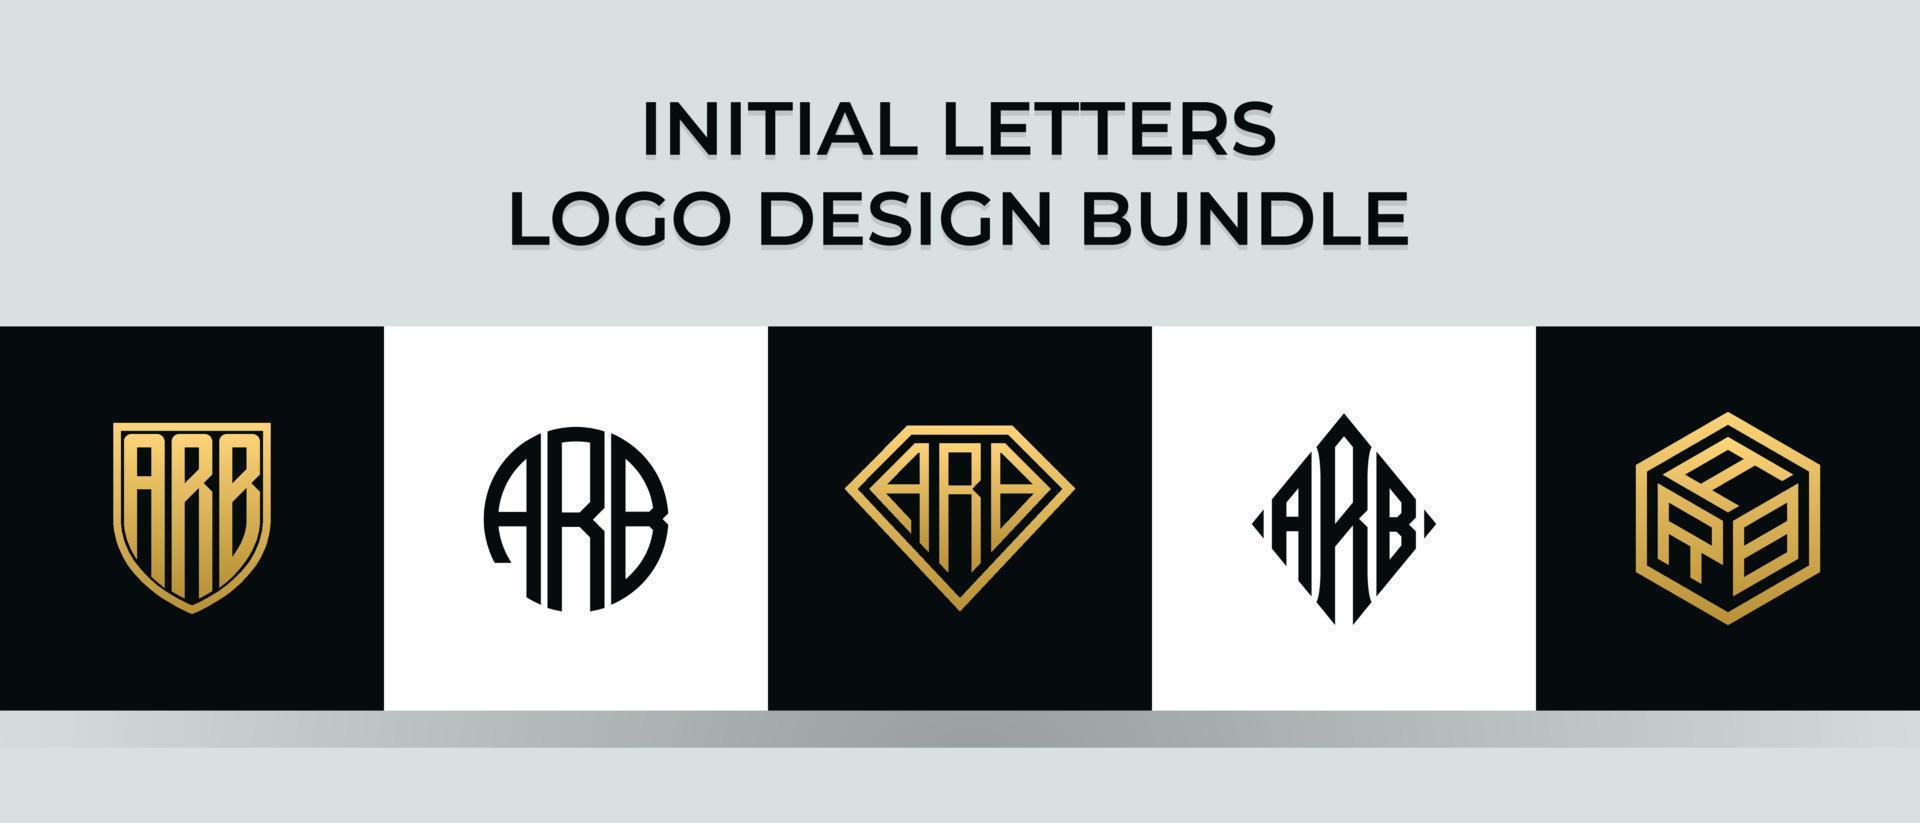 beginletters arb logo ontwerpen bundel vector